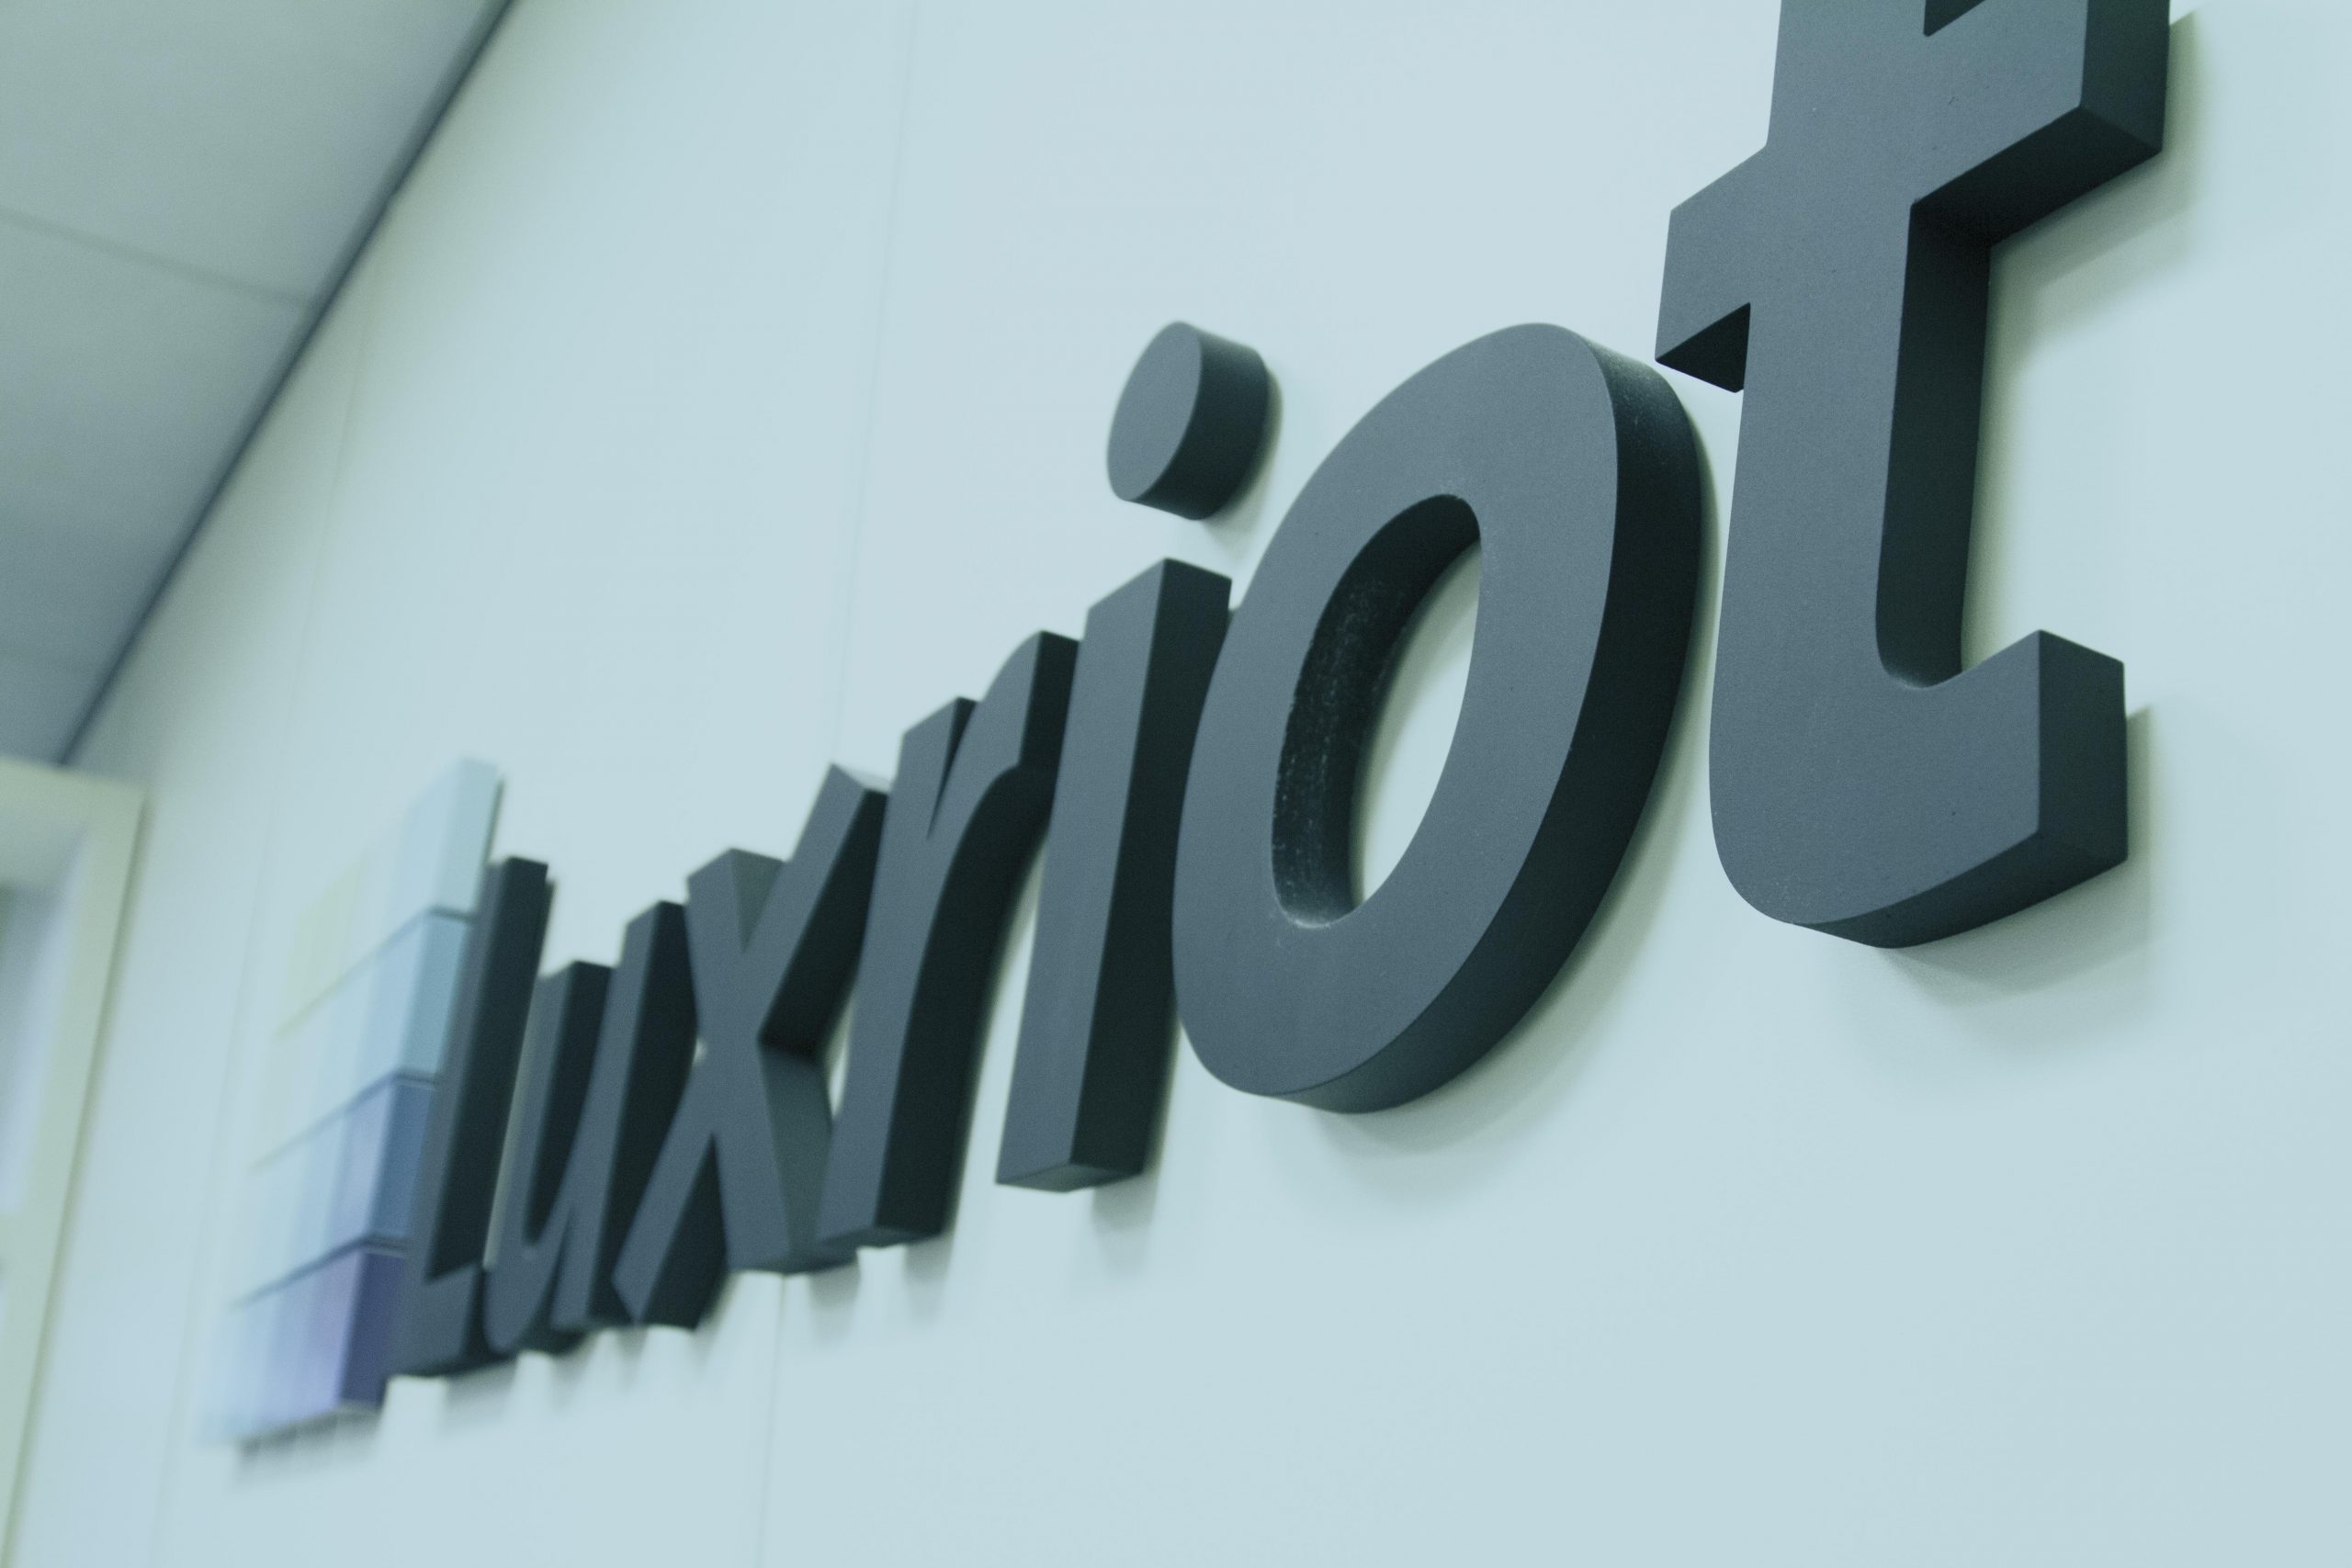 Konica Minolta e Luxriot: nuova partnership nel settore della video analisi